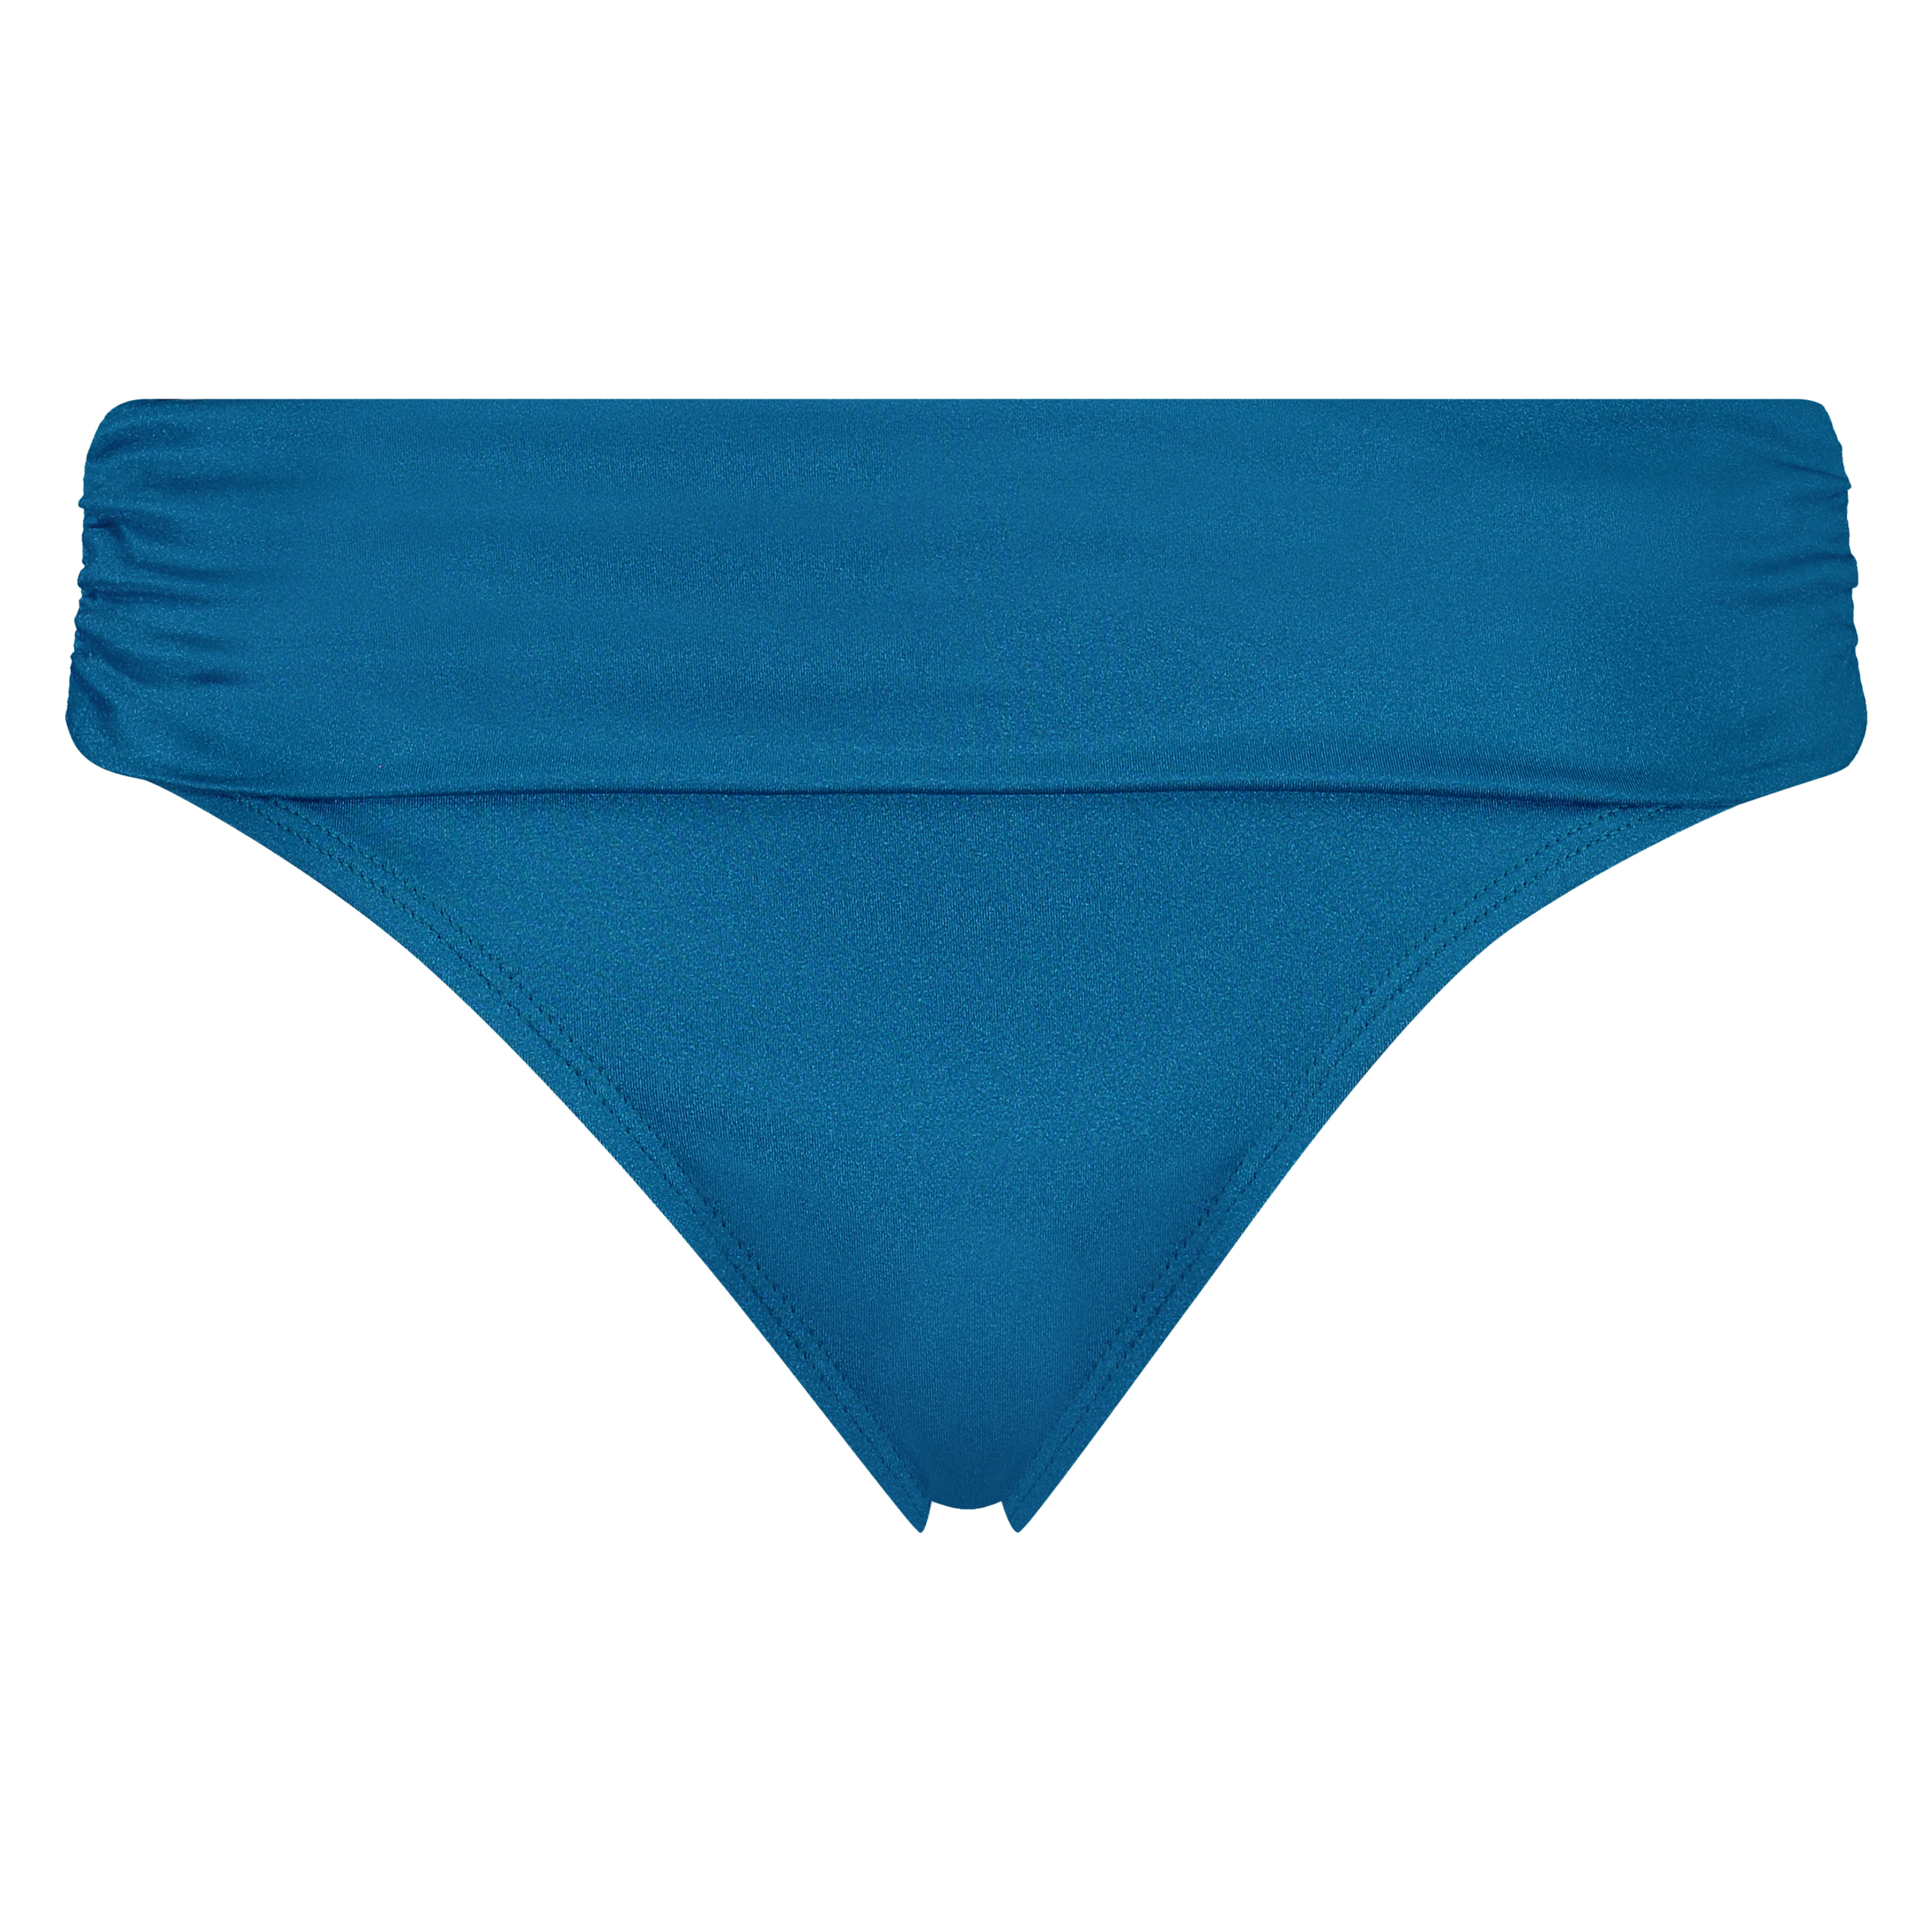 Sunset Dream Fold Over Bikini Bottoms, Blue, main